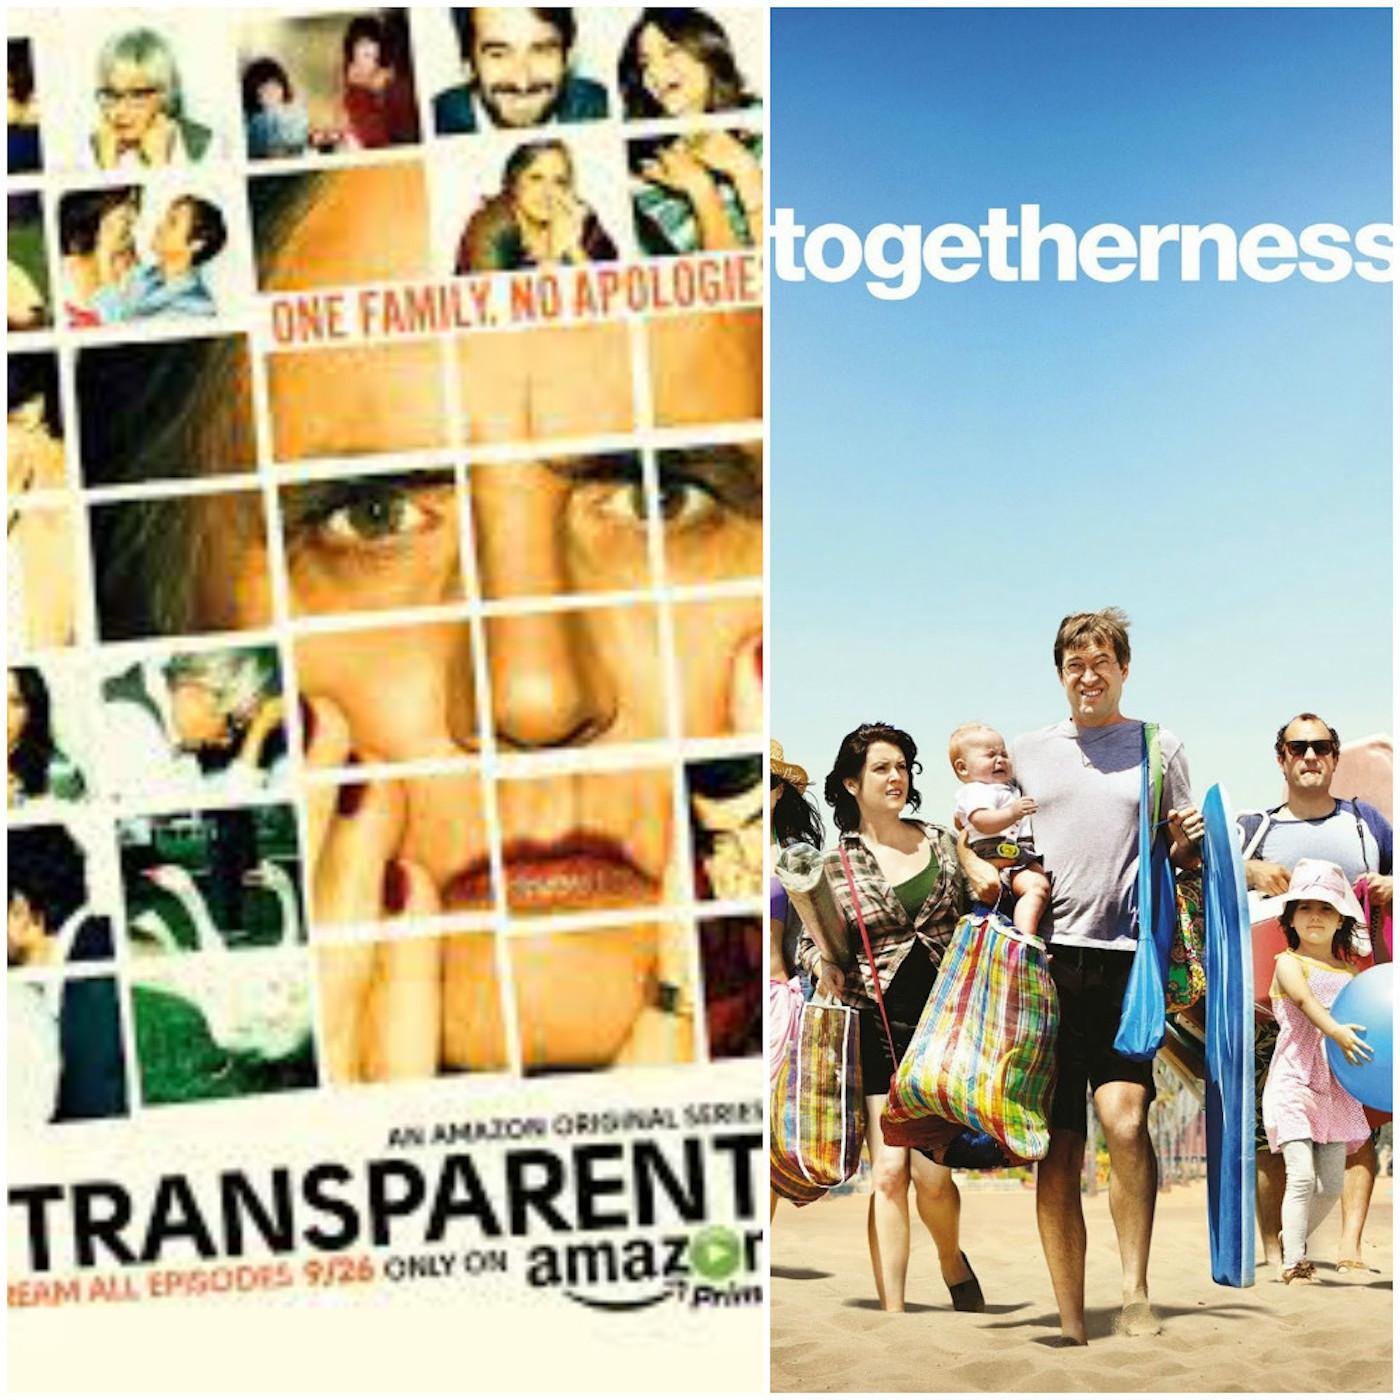 Ep.08: Transparent; Duplass Bros; Togetherness